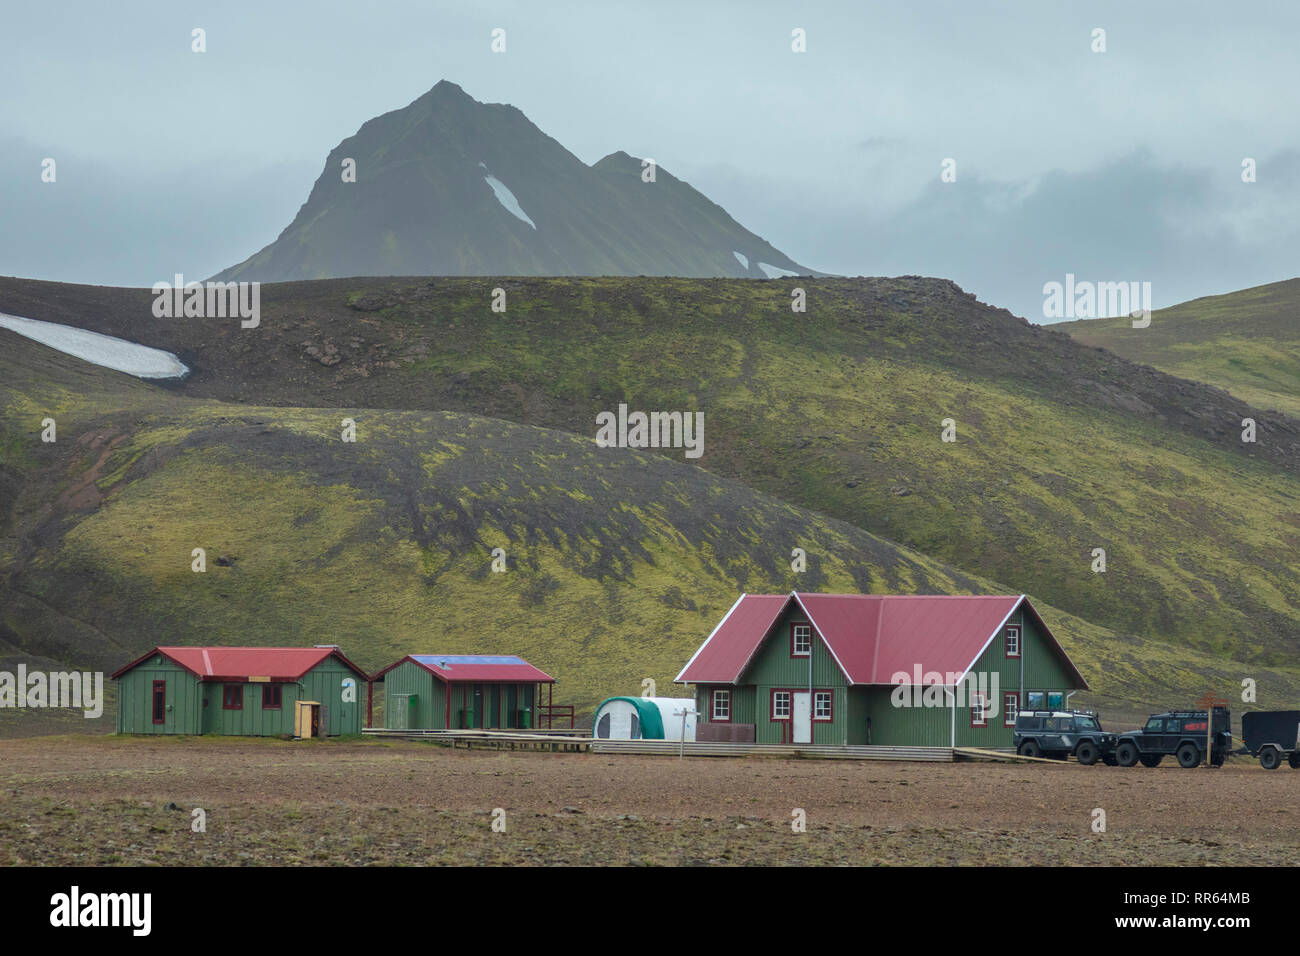 Le refuge de montagne à Alftavatn FI, le long du sentier de randonnée Laugavegur. Hauts Plateaux du centre, Sudhurland, Islande. Banque D'Images